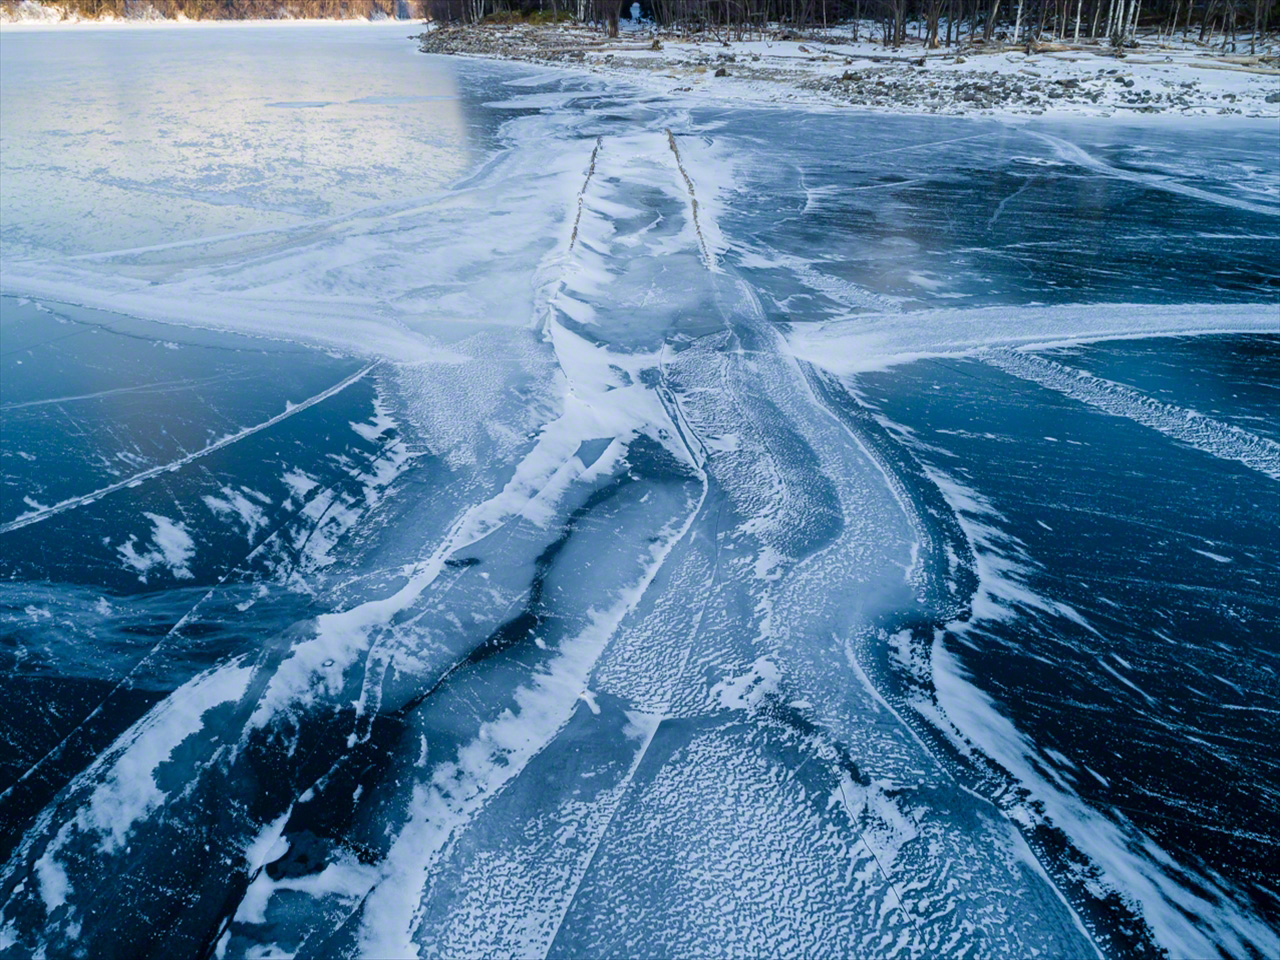 Décembre. Une fine couche de glace se forme sur le lac. Le pont refait progressivement surface à mesure que le niveau d’eau baisse.